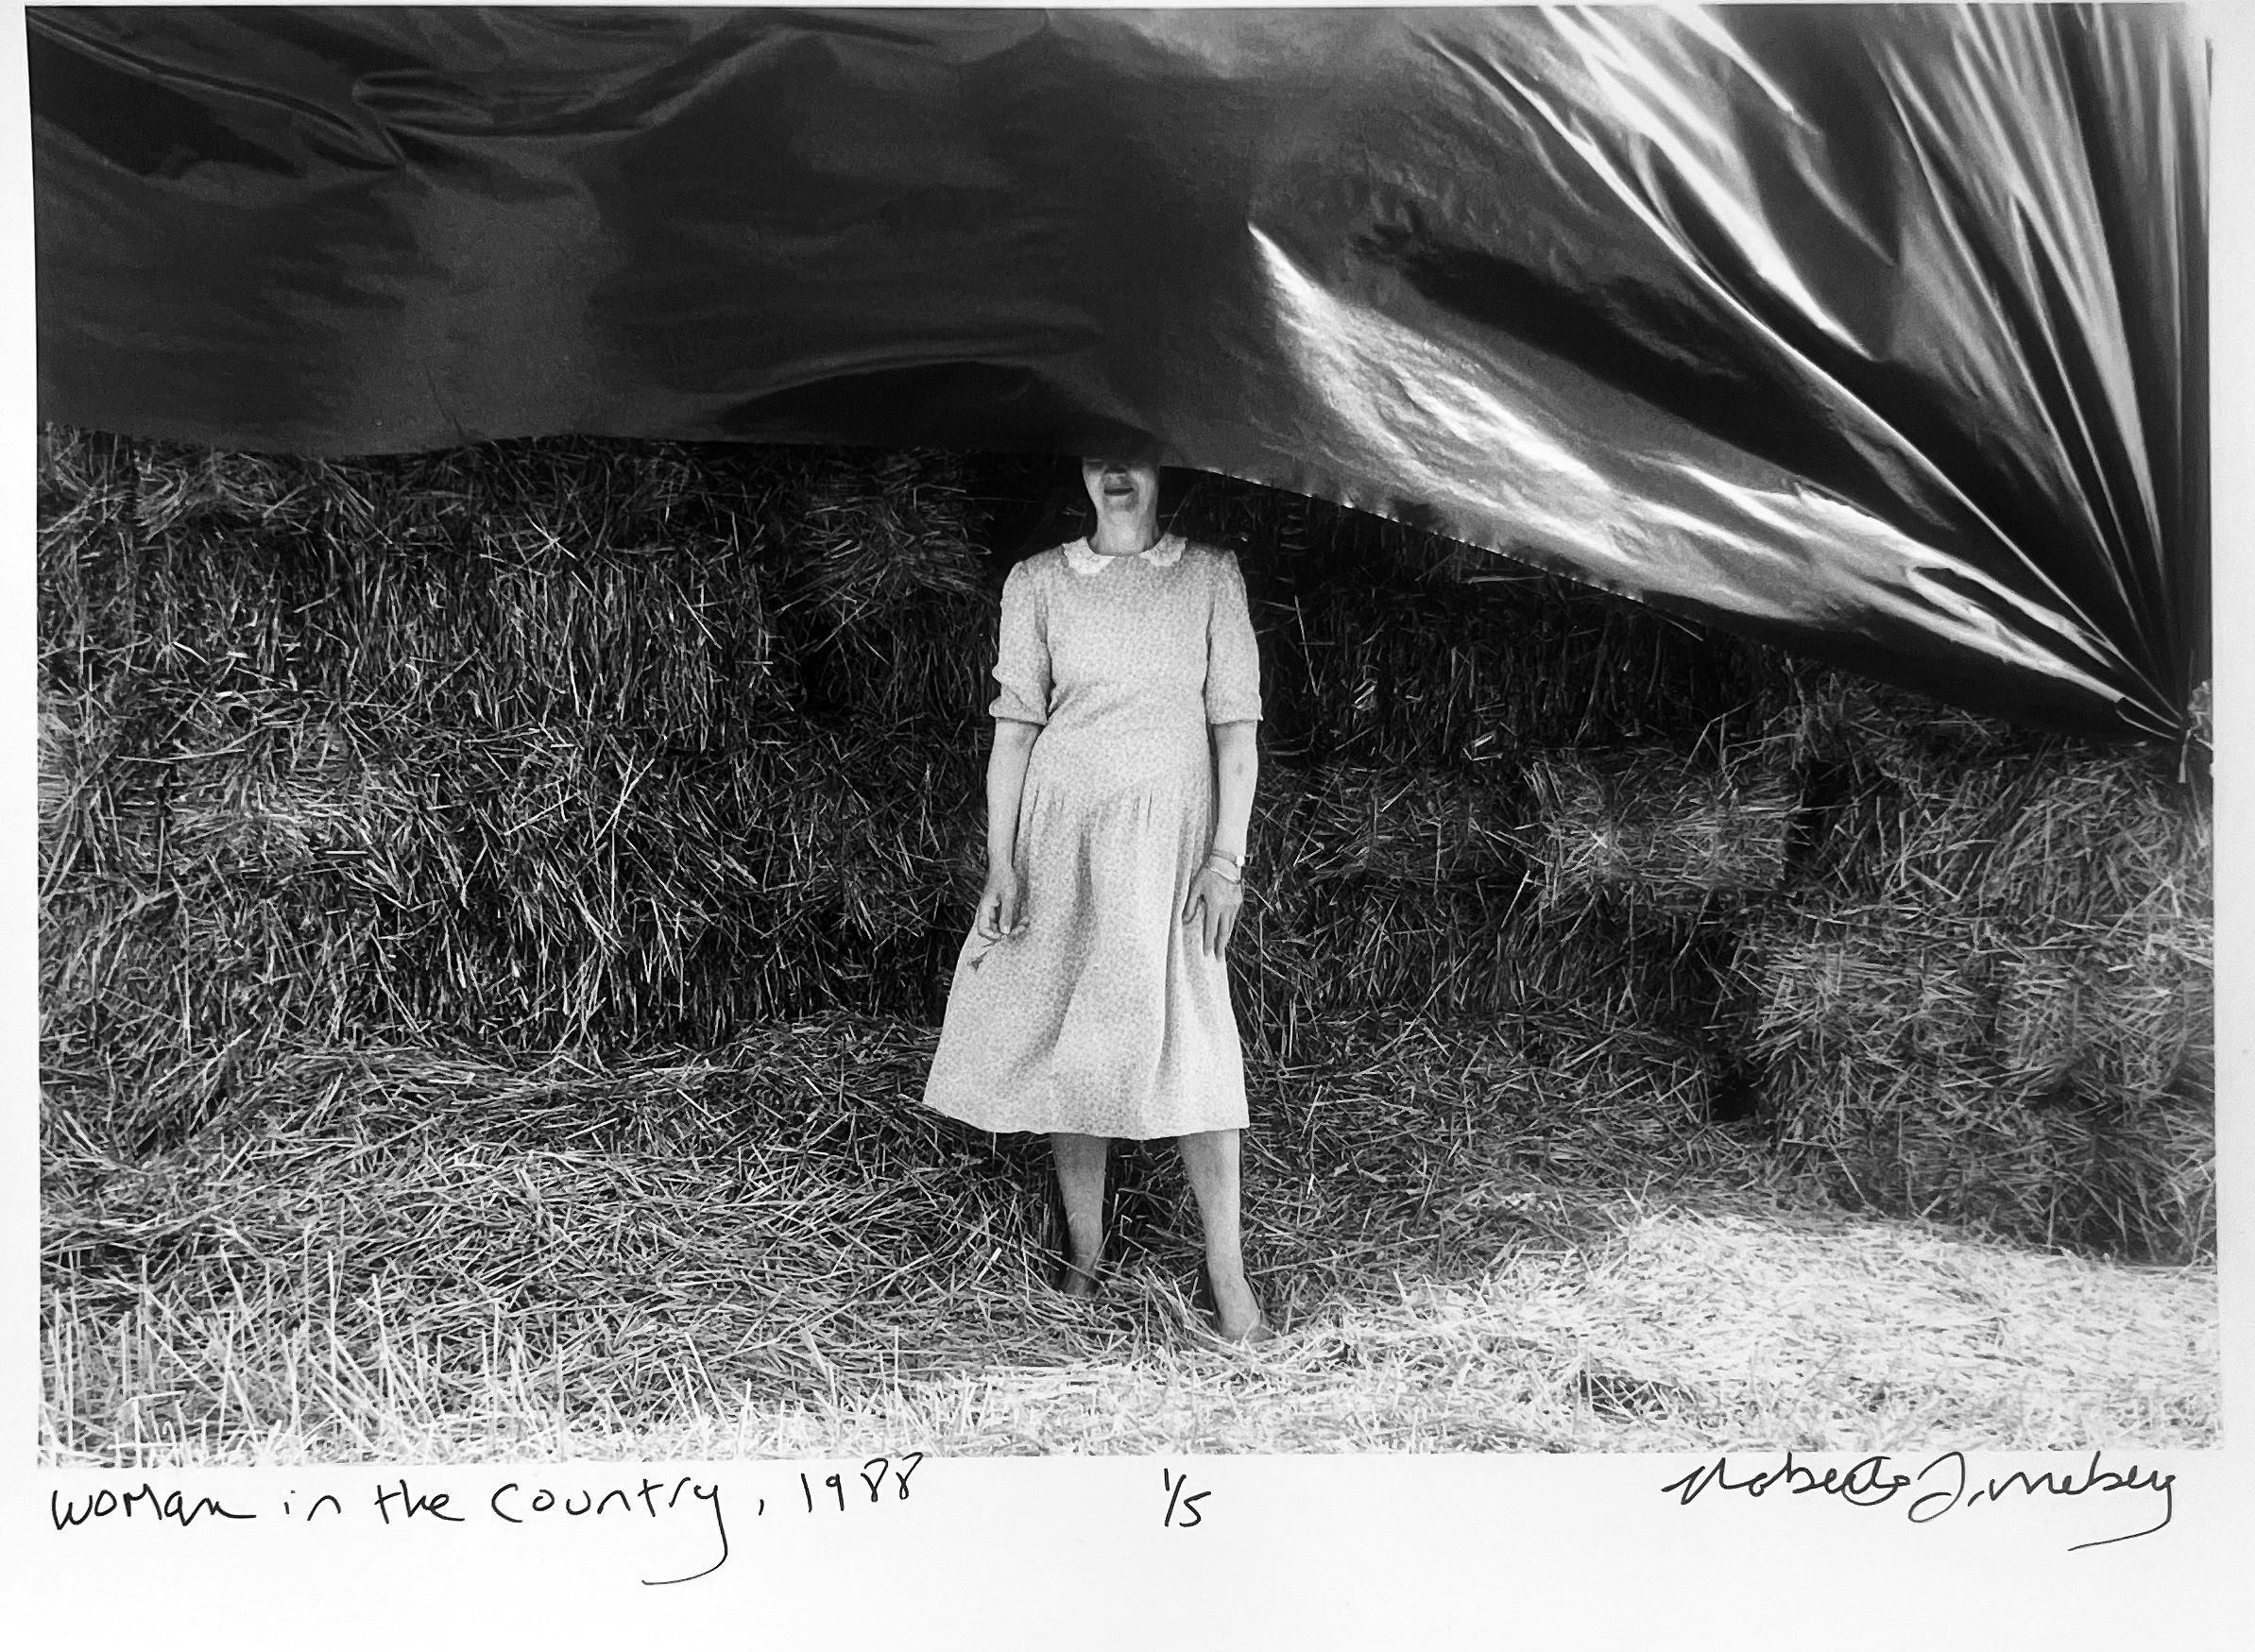 Roberta Fineberg Portrait Photograph – In the Country, Schwarz-Weiß-Porträt einer Frau in französischer Landschaft